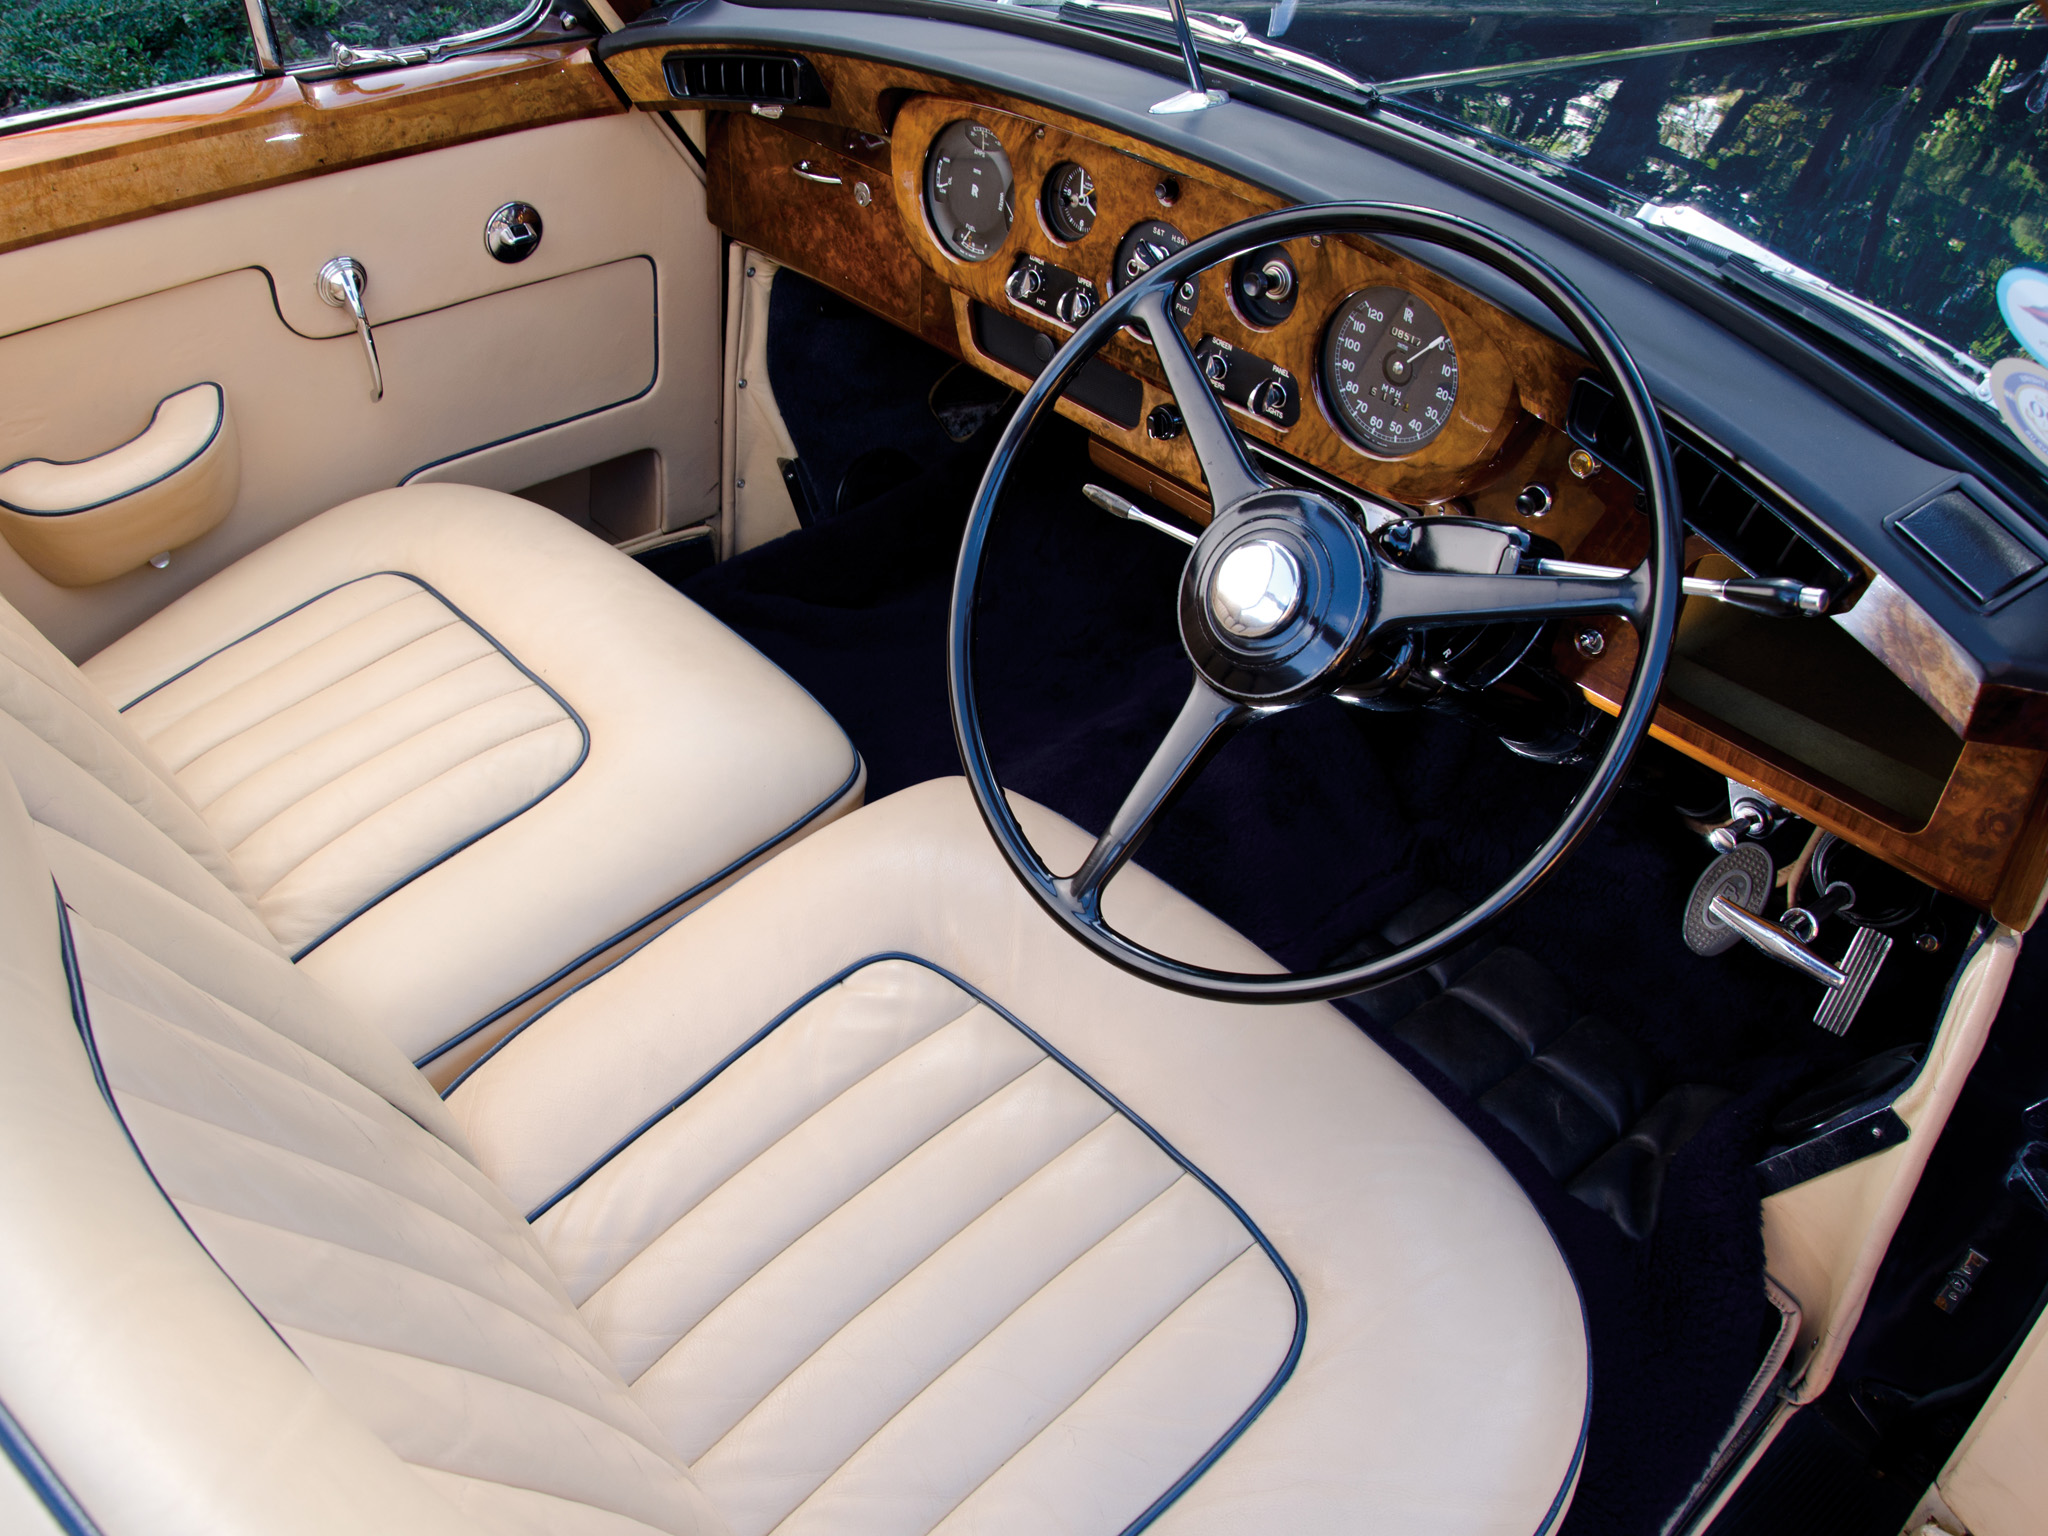 En av de stora behållningarna med Rolls Royce och Bentley är de traditionella, påkostade och överdådiga interiörerna. Här en tidig Silver Cloud från mitten av 50-talet. De förnyades kontinuerligt under åren men behöll samma stil under decennier.